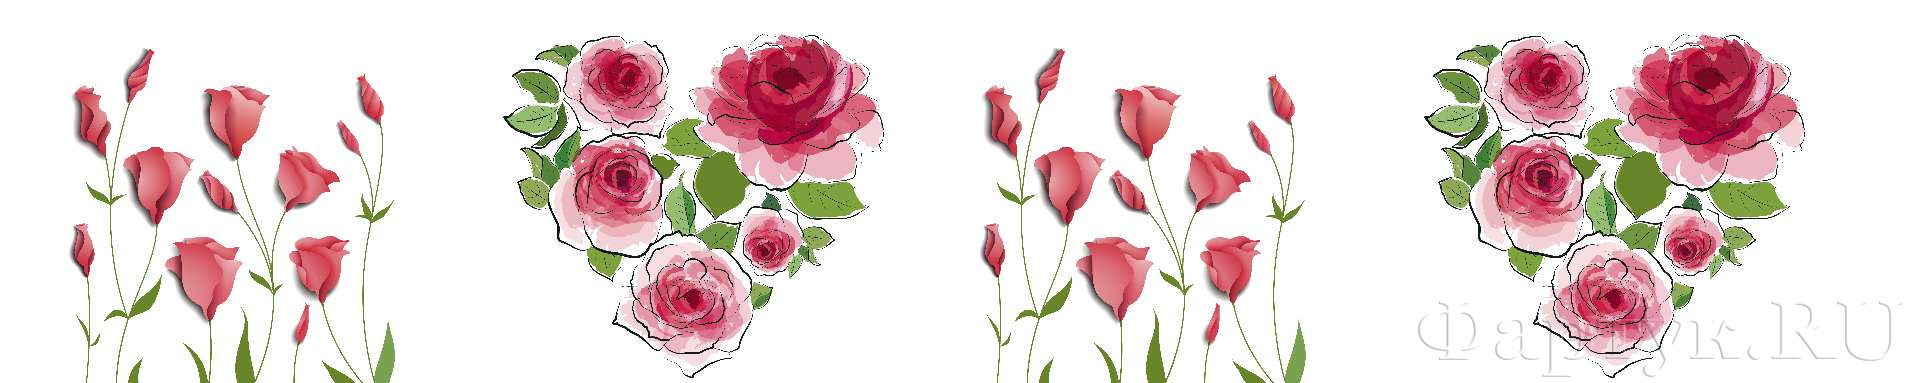 Розы и тюльпаны